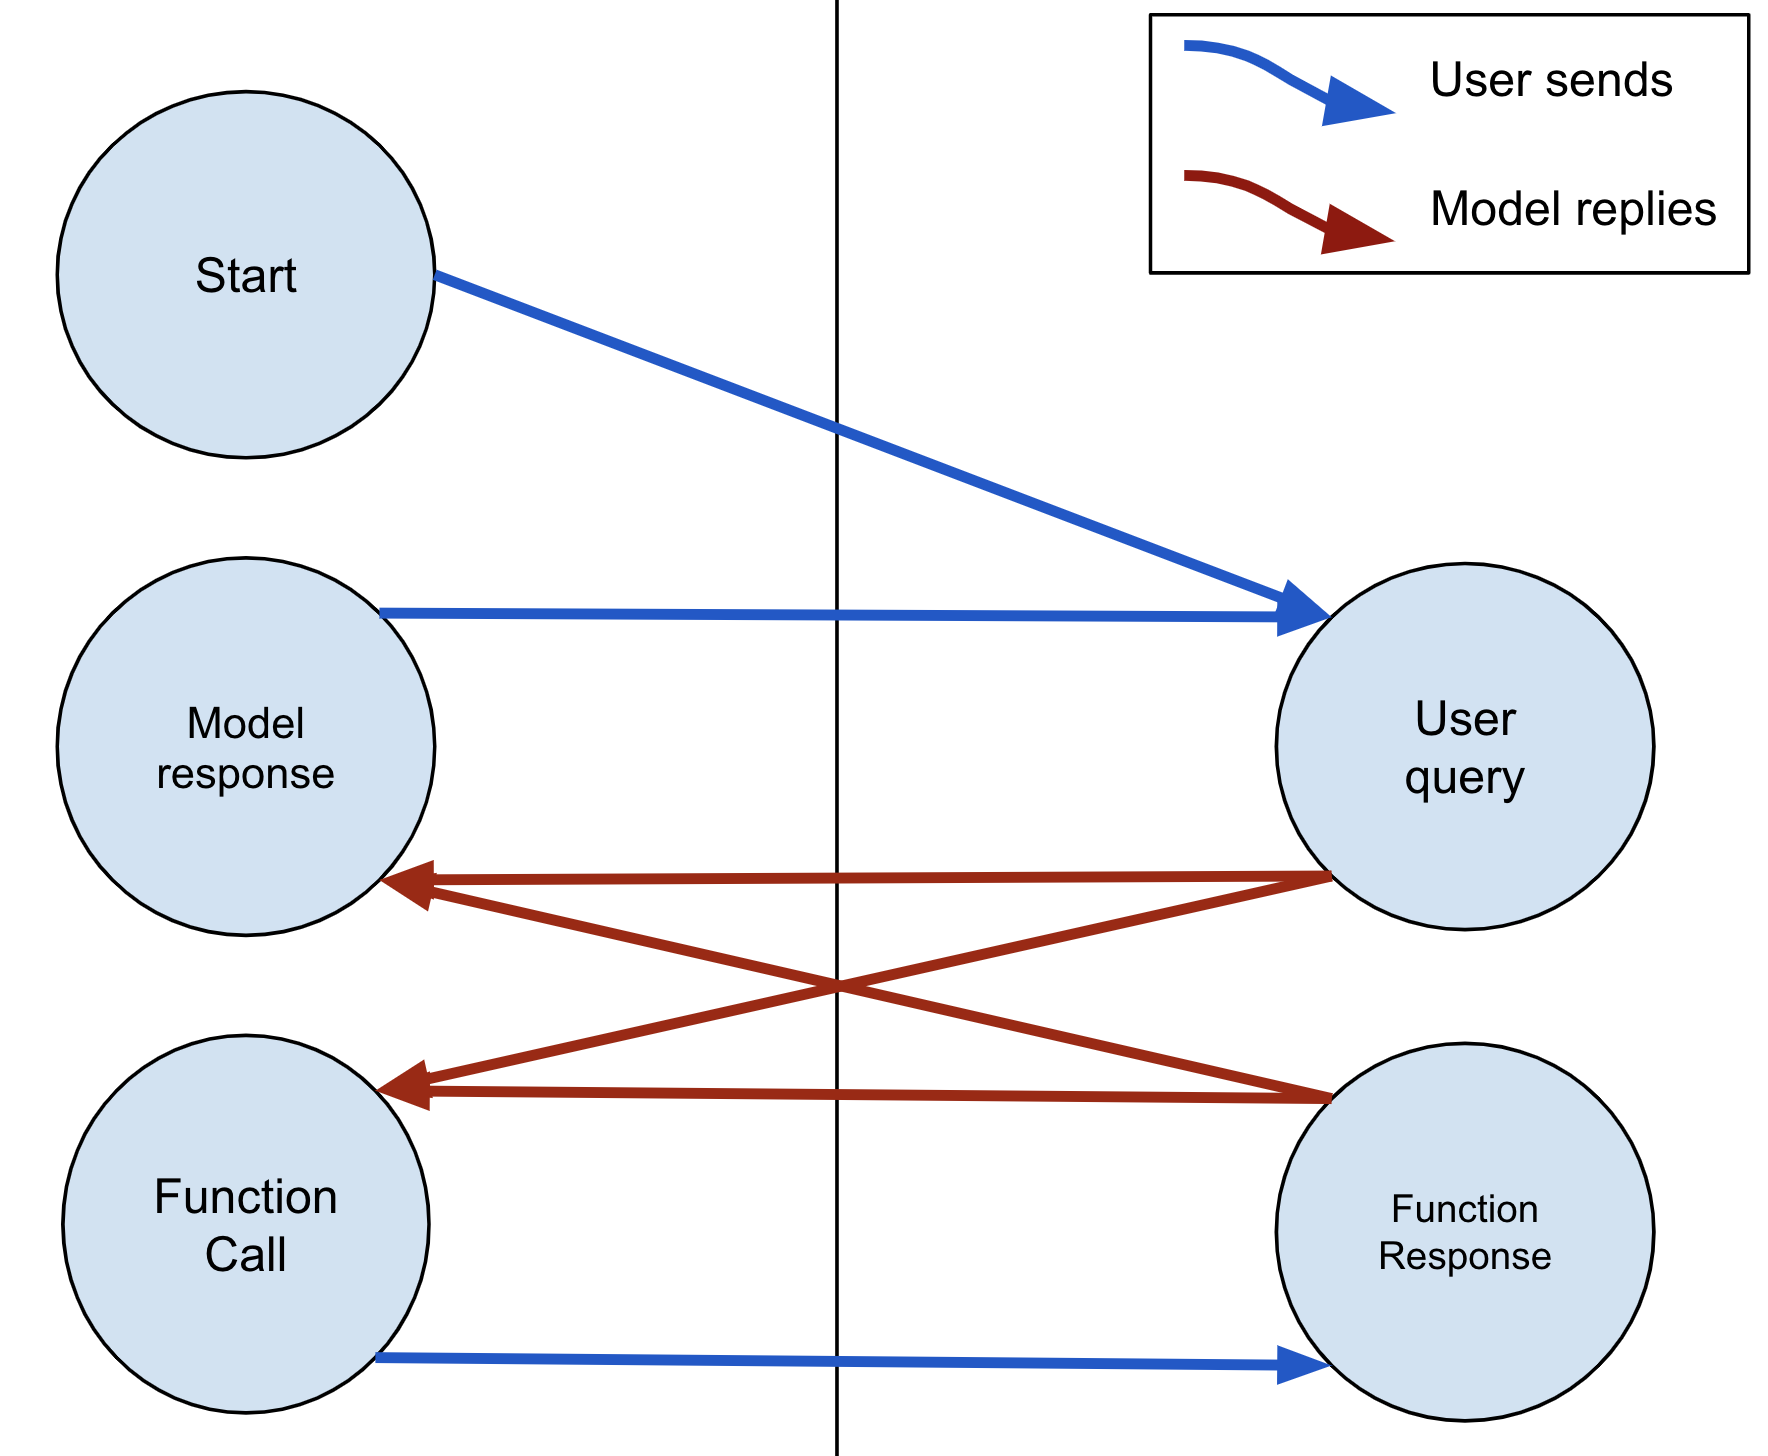 El modelo siempre puede responder con texto o una FunctionCall. Si el modelo envía una FunctionCall, el usuario debe responder con una FunctionResponse